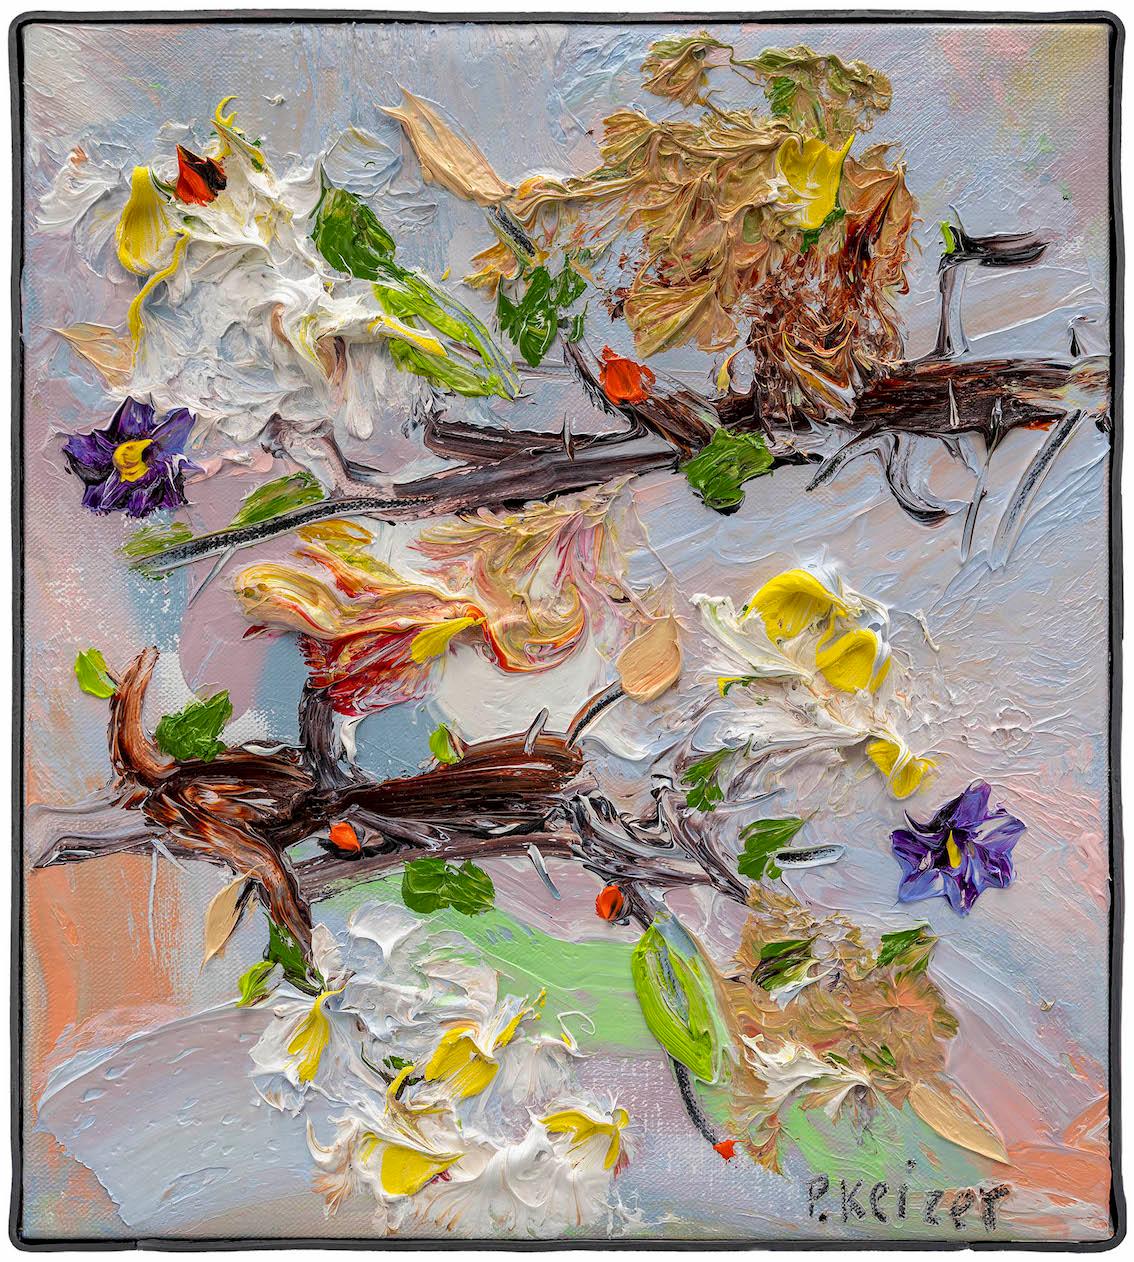 Together", Ölgemälde mit Blumen von Peter Keizer.

Peter Keizer ist ein niederländischer Maler und Bildhauer, geboren 1961. Er studierte an der Rijksakademie in Amsterdam und begann nach seinem Abschluss am Royal College of Art in London als